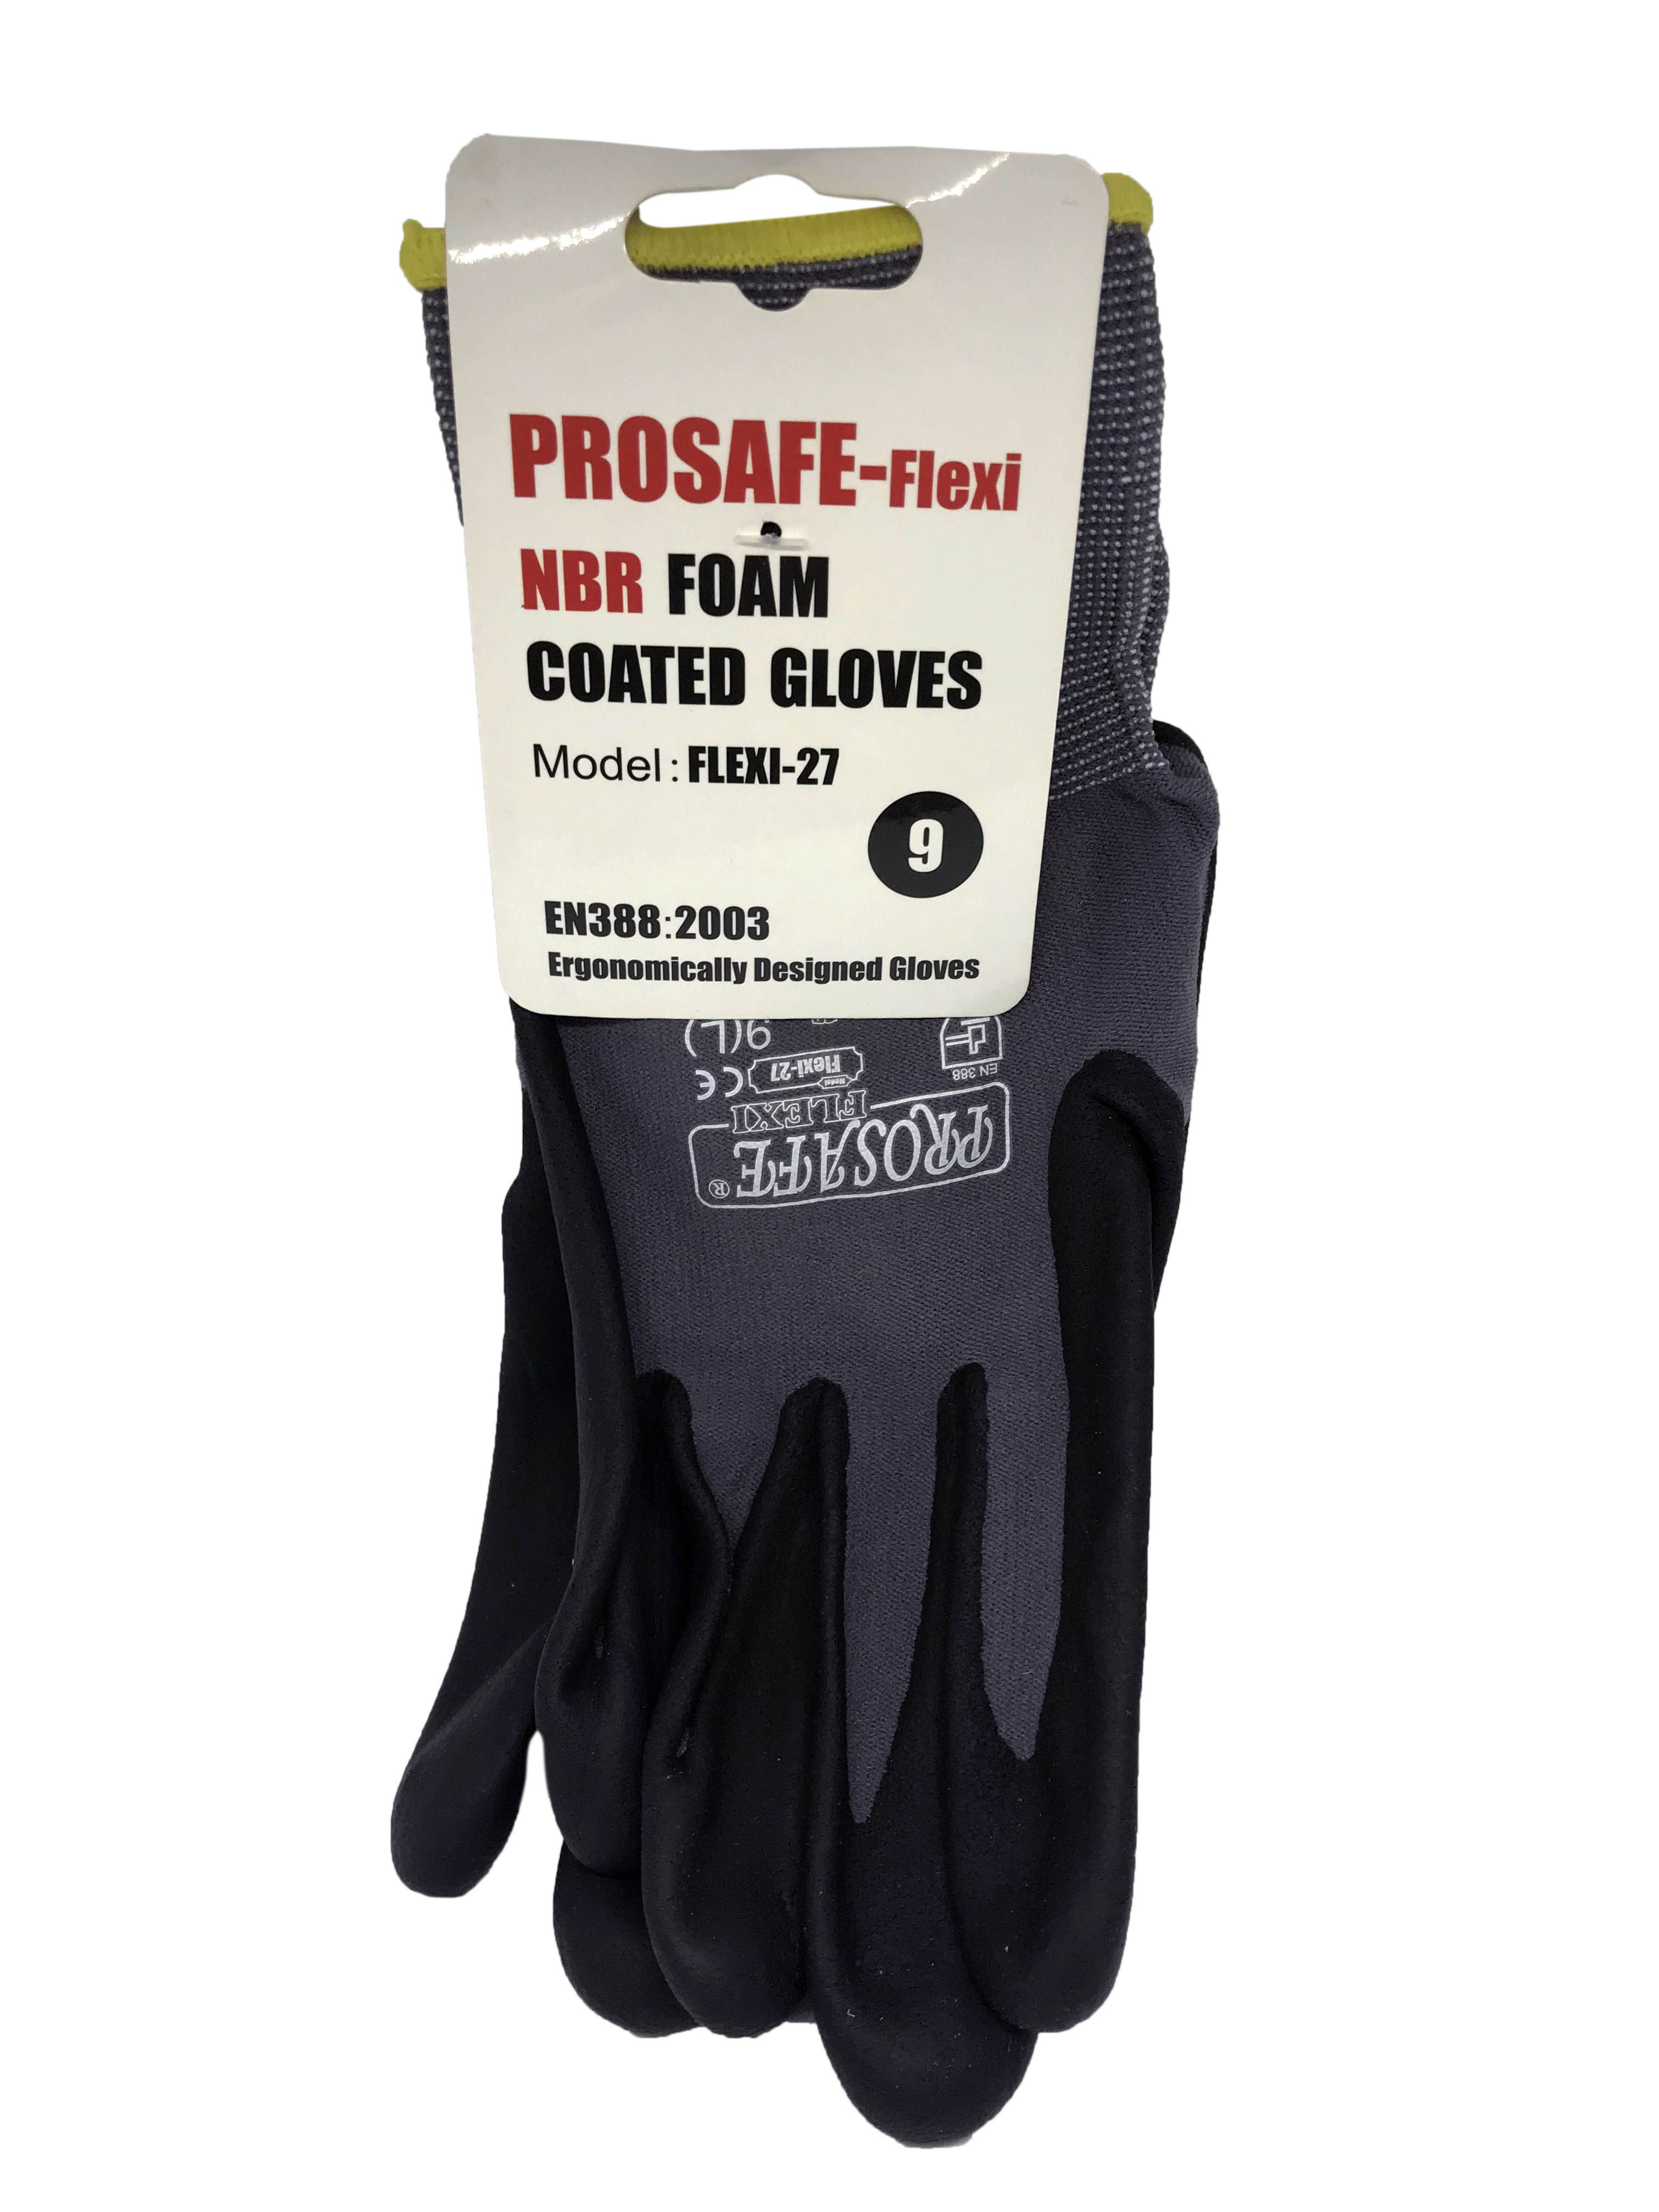 NBR Foam Coated Size 9 Gloves EN 388:2003 [Cut Resistant Level 2]